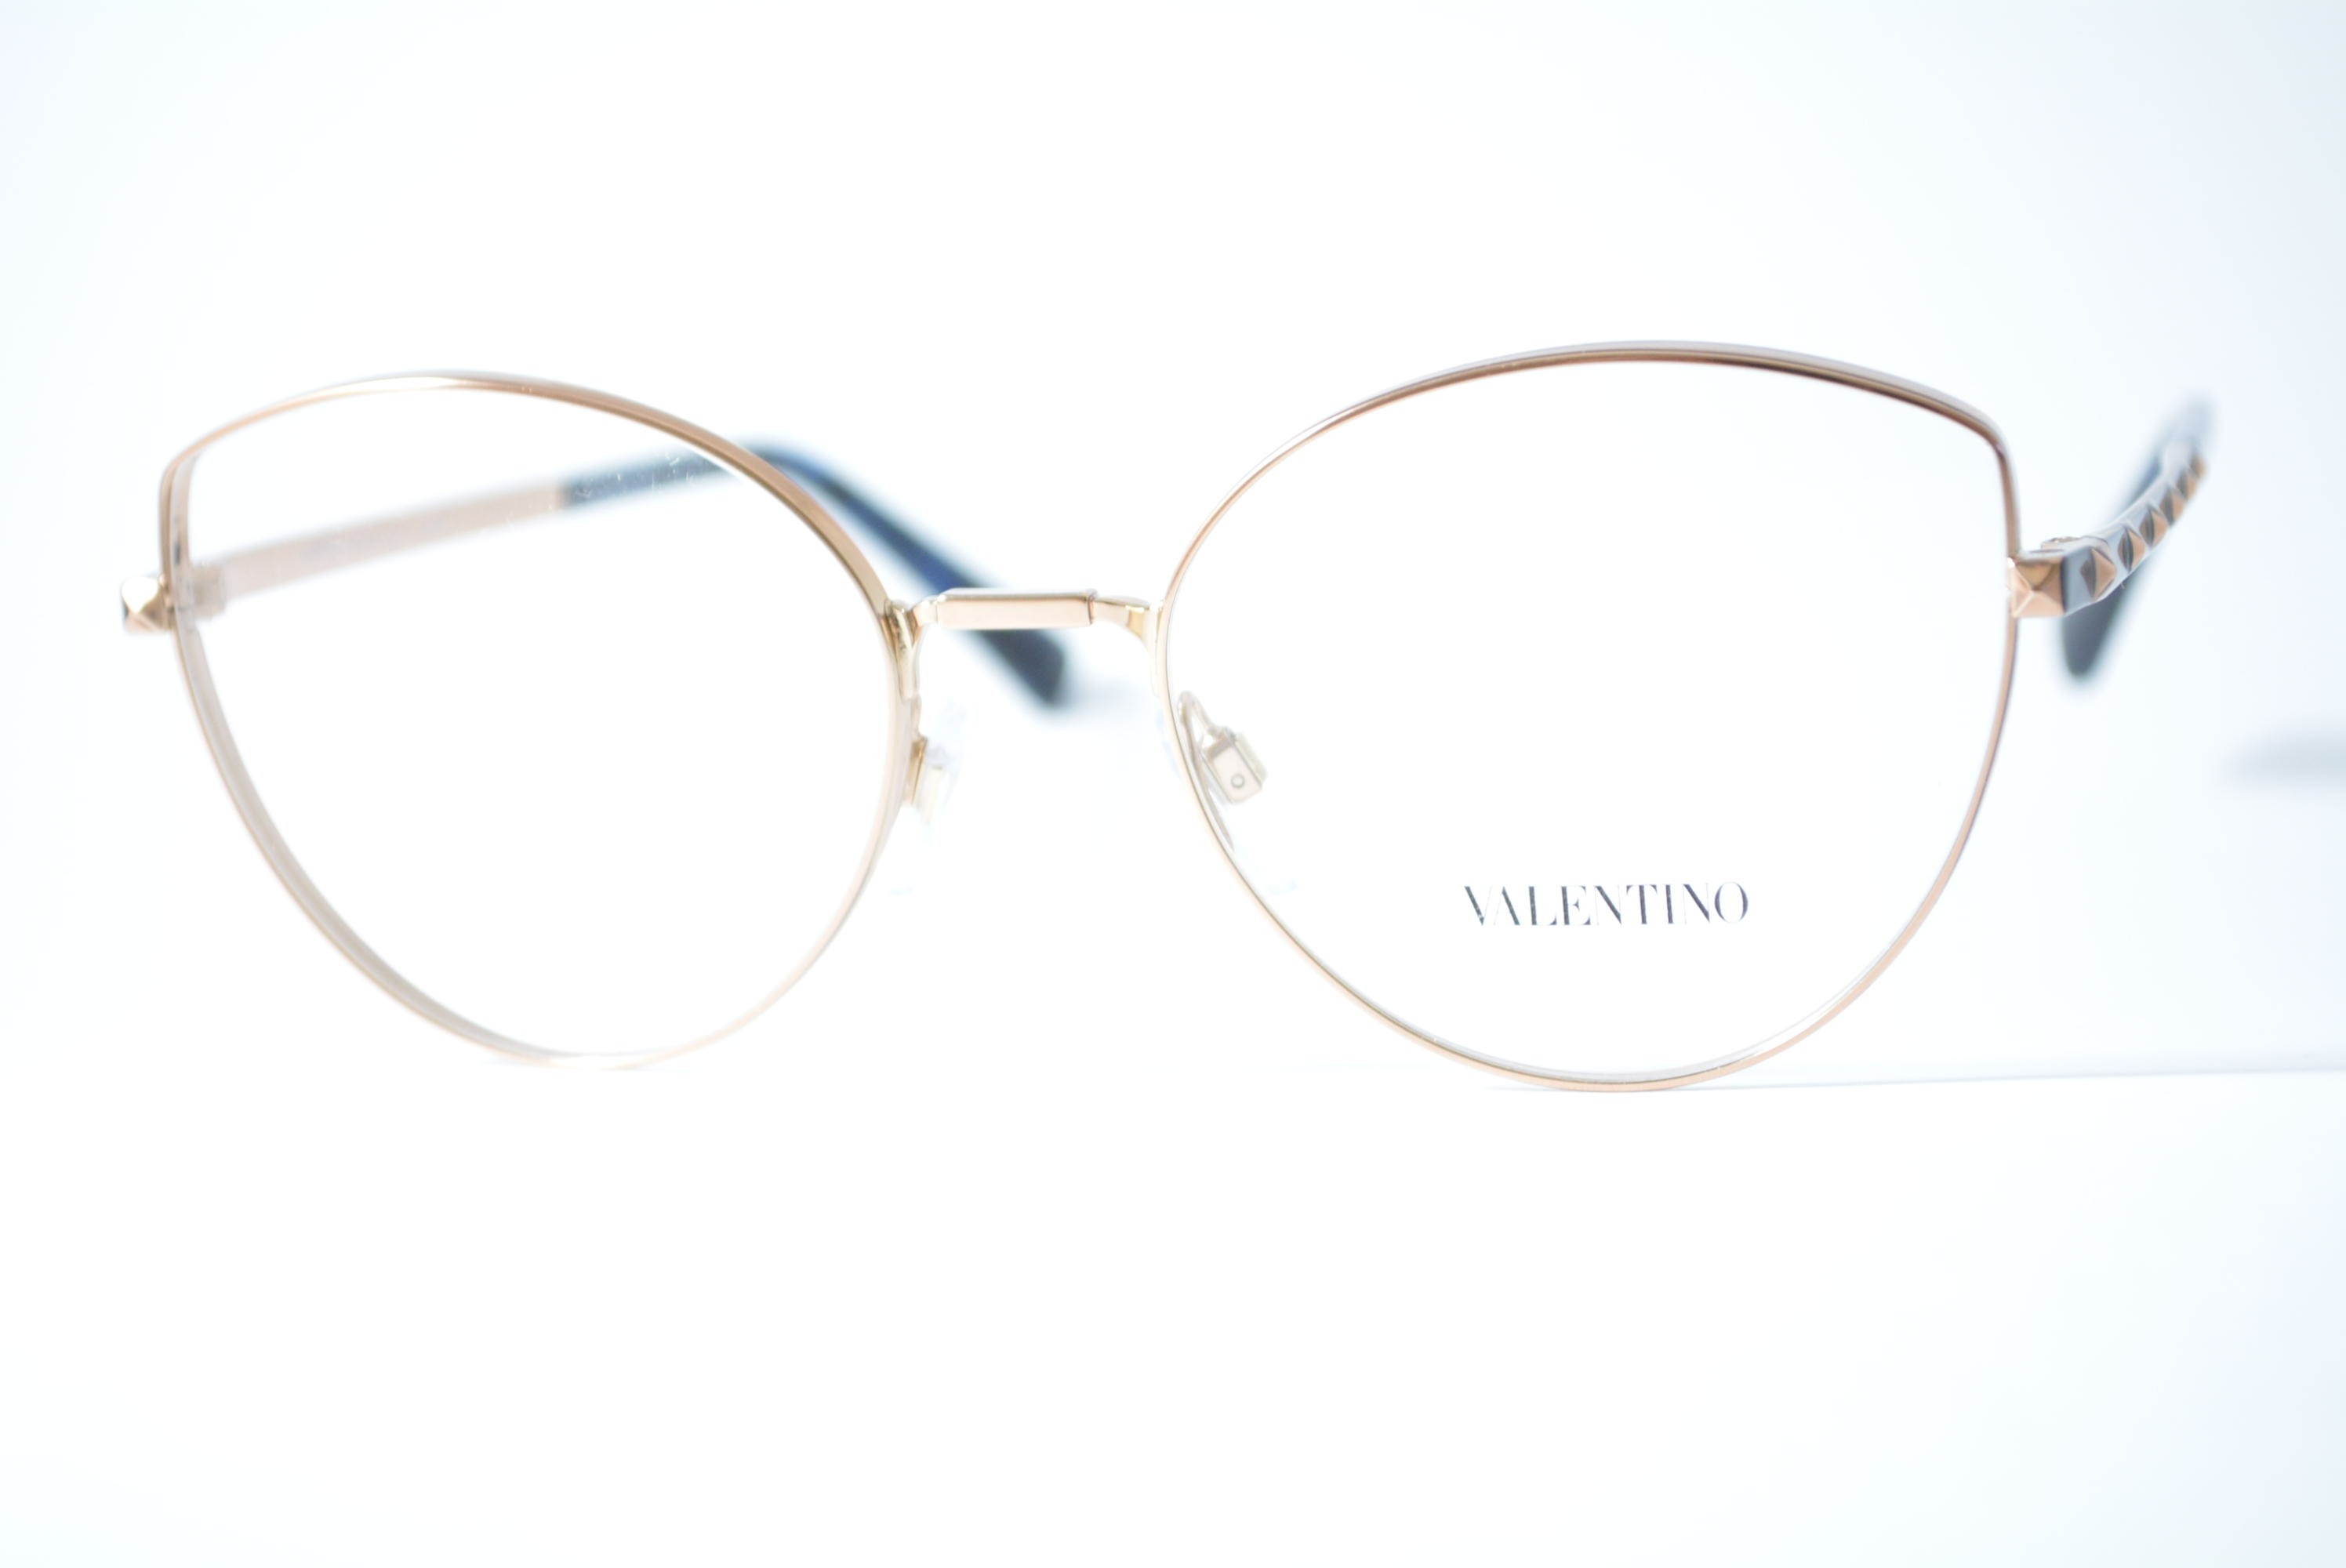 armação de óculos Valentino mod va1018 3004 tamanho 53